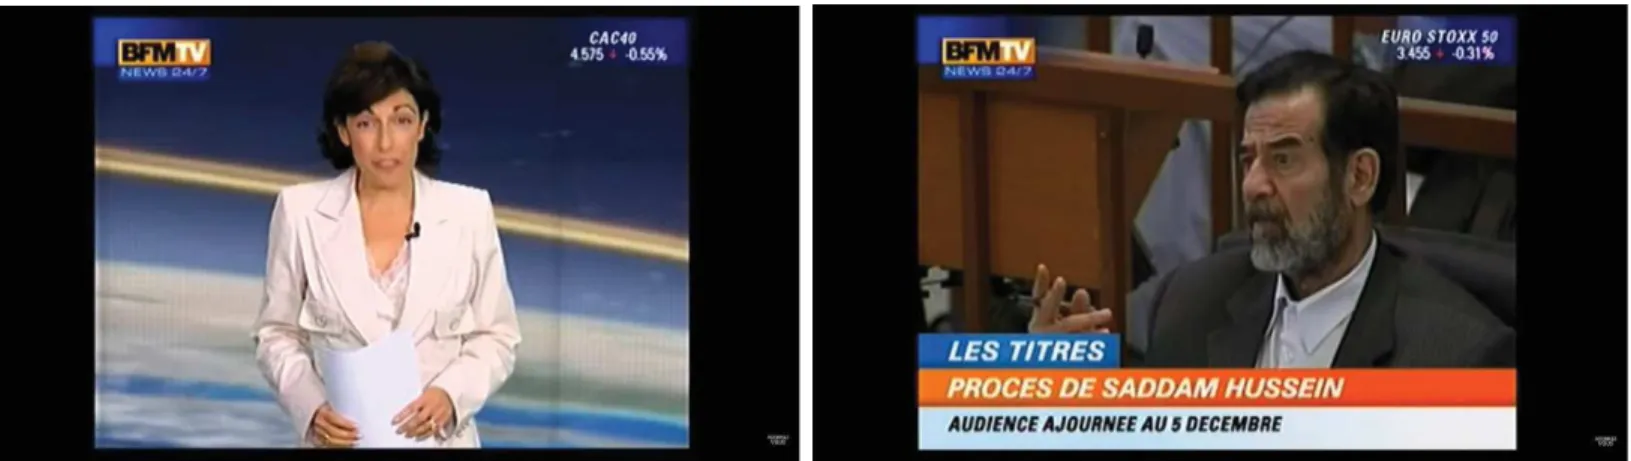 Figure 3 - source YouTube, titre : Les images du lancement de BFMTV en  2005 (2019, ©BFMTV)